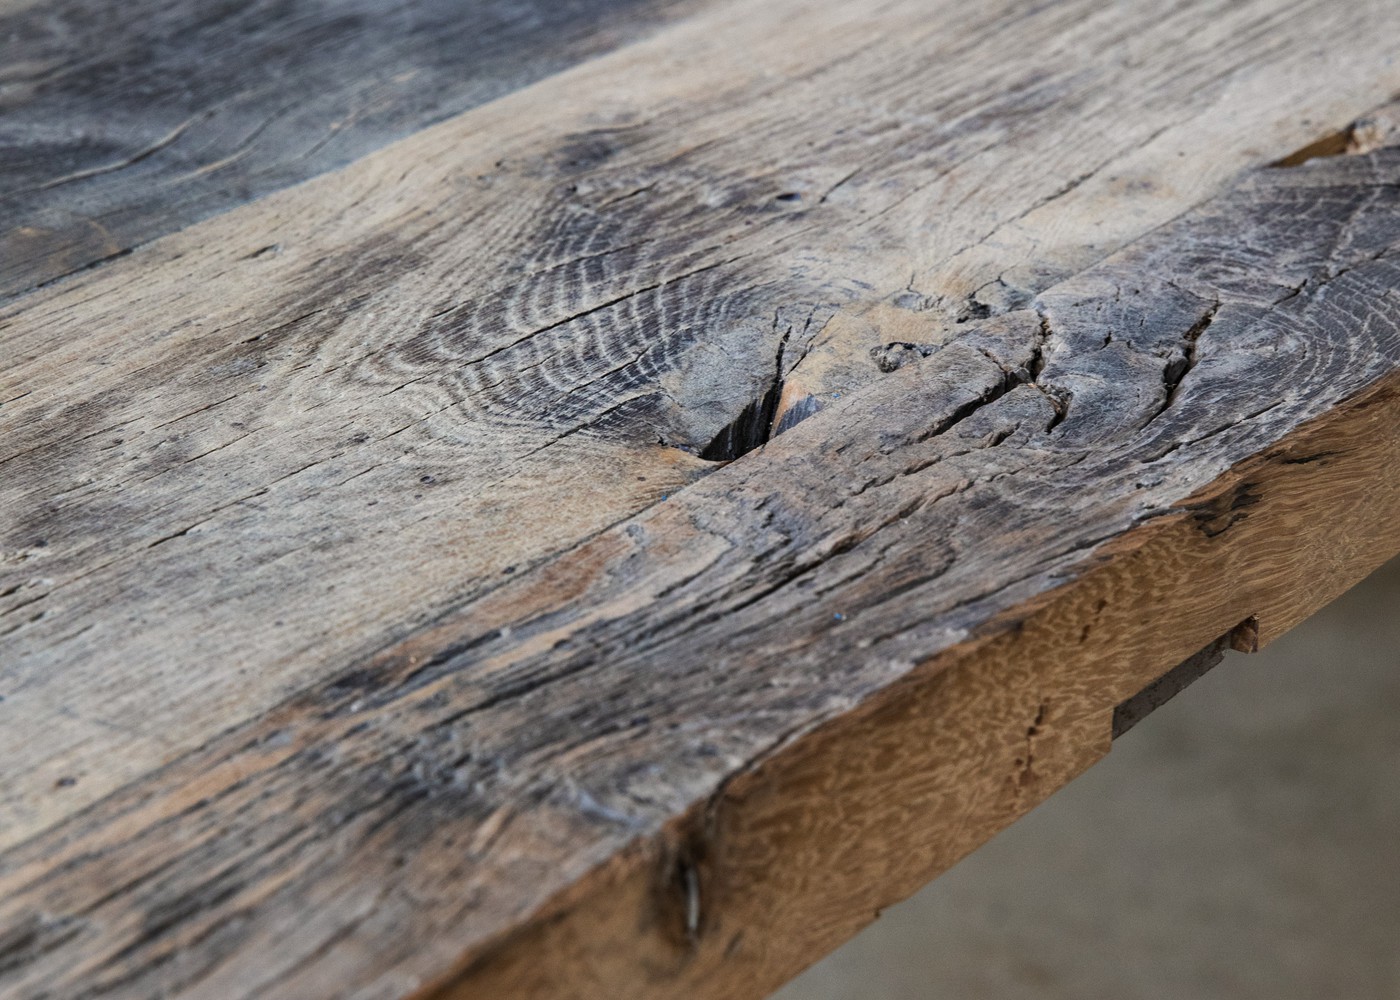 Plateau de table BADEN à partir de vieux fond de wagon chêne non raboté brut lisse, avec touches de peinture - (longueur max 2600mm)